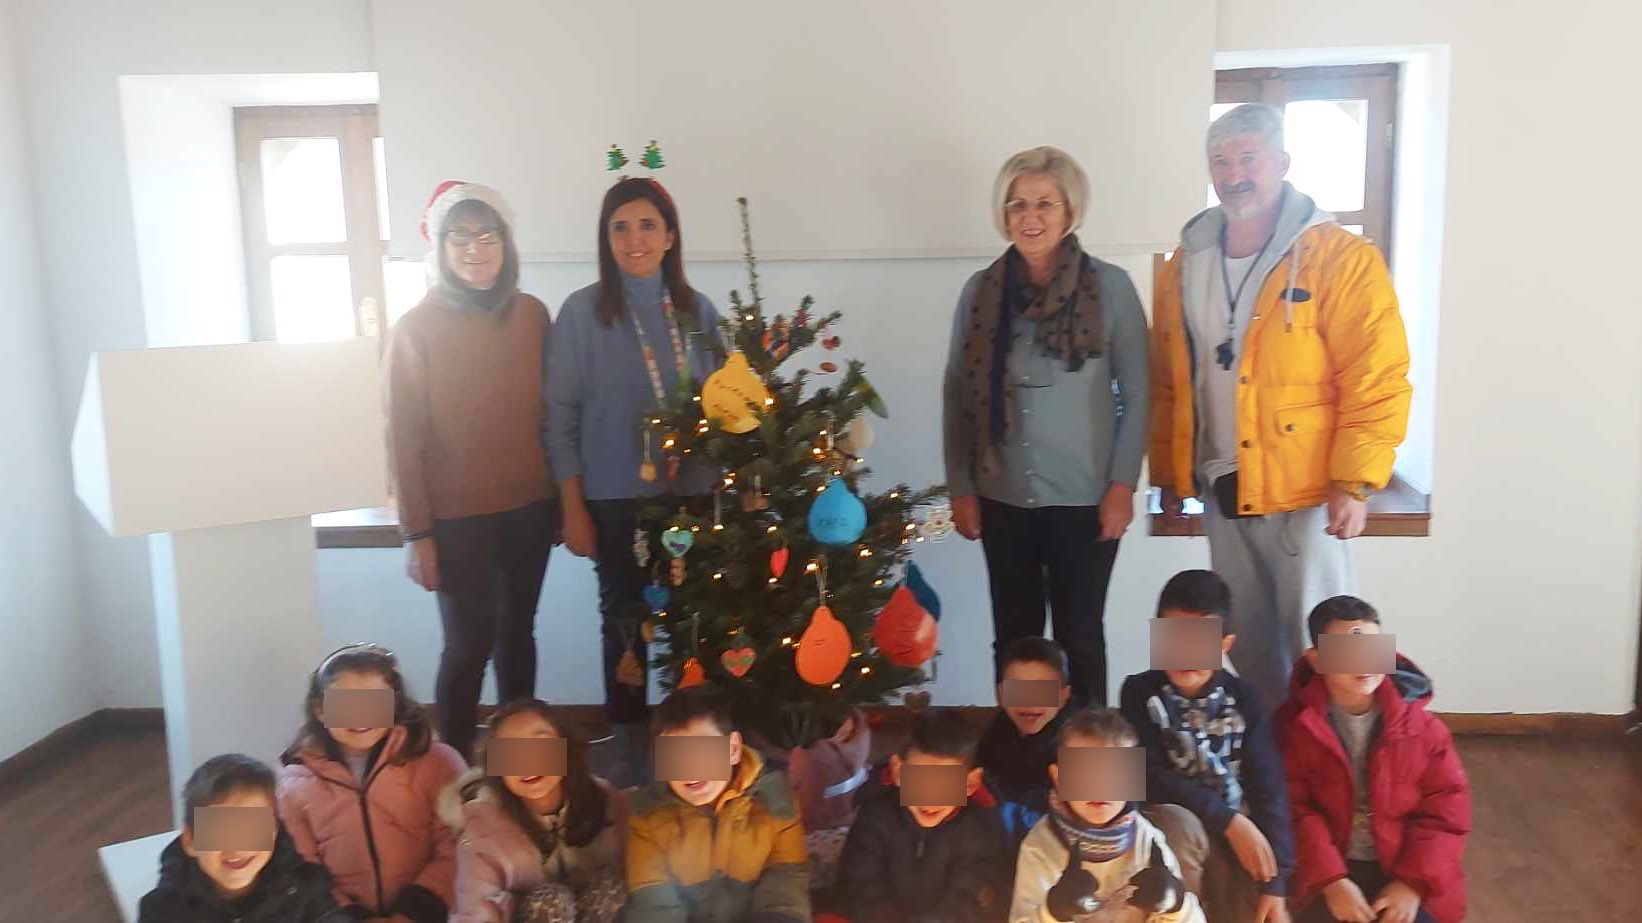 Το "χριστουγεννιάτικο δέντρο" της αρχαιότητας στόλισαν μαθητές στον Πύργο Καραμίχου